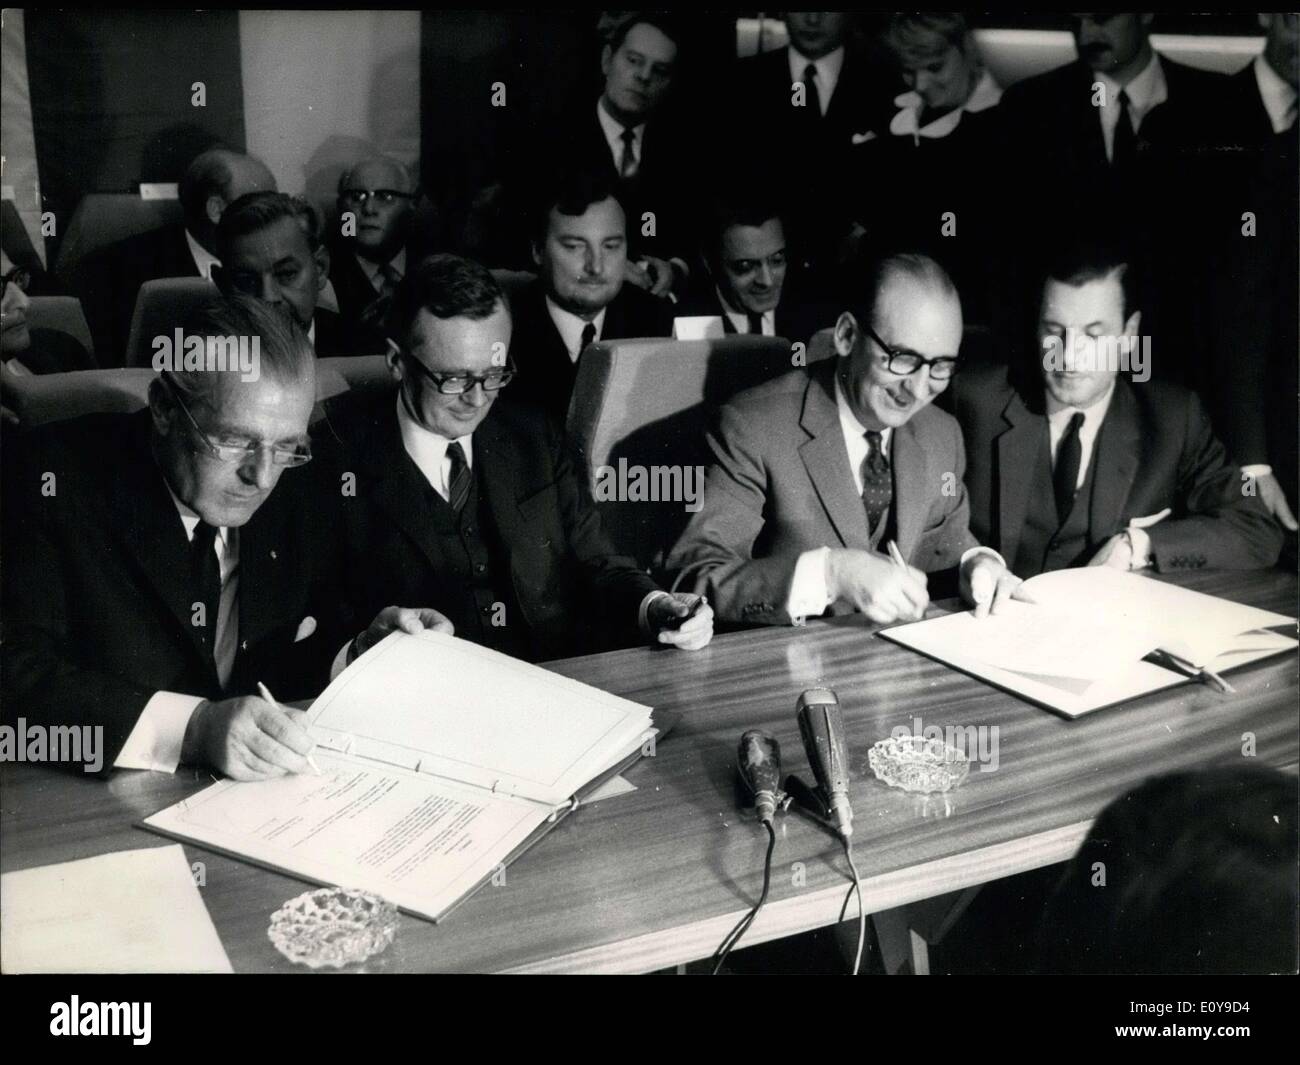 29 maggio 1969 - sono all'Aeronautica e spazio esposizione presso l'aeroporto di Bourget la firma di un accordo tra la Francia e la Germania. Von Braun è l'Ambasciatore tedesco a Parigi. Schiller è il ministro tedesco dell'economia. Chamant è il ministro francese dei trasporti. Foto Stock